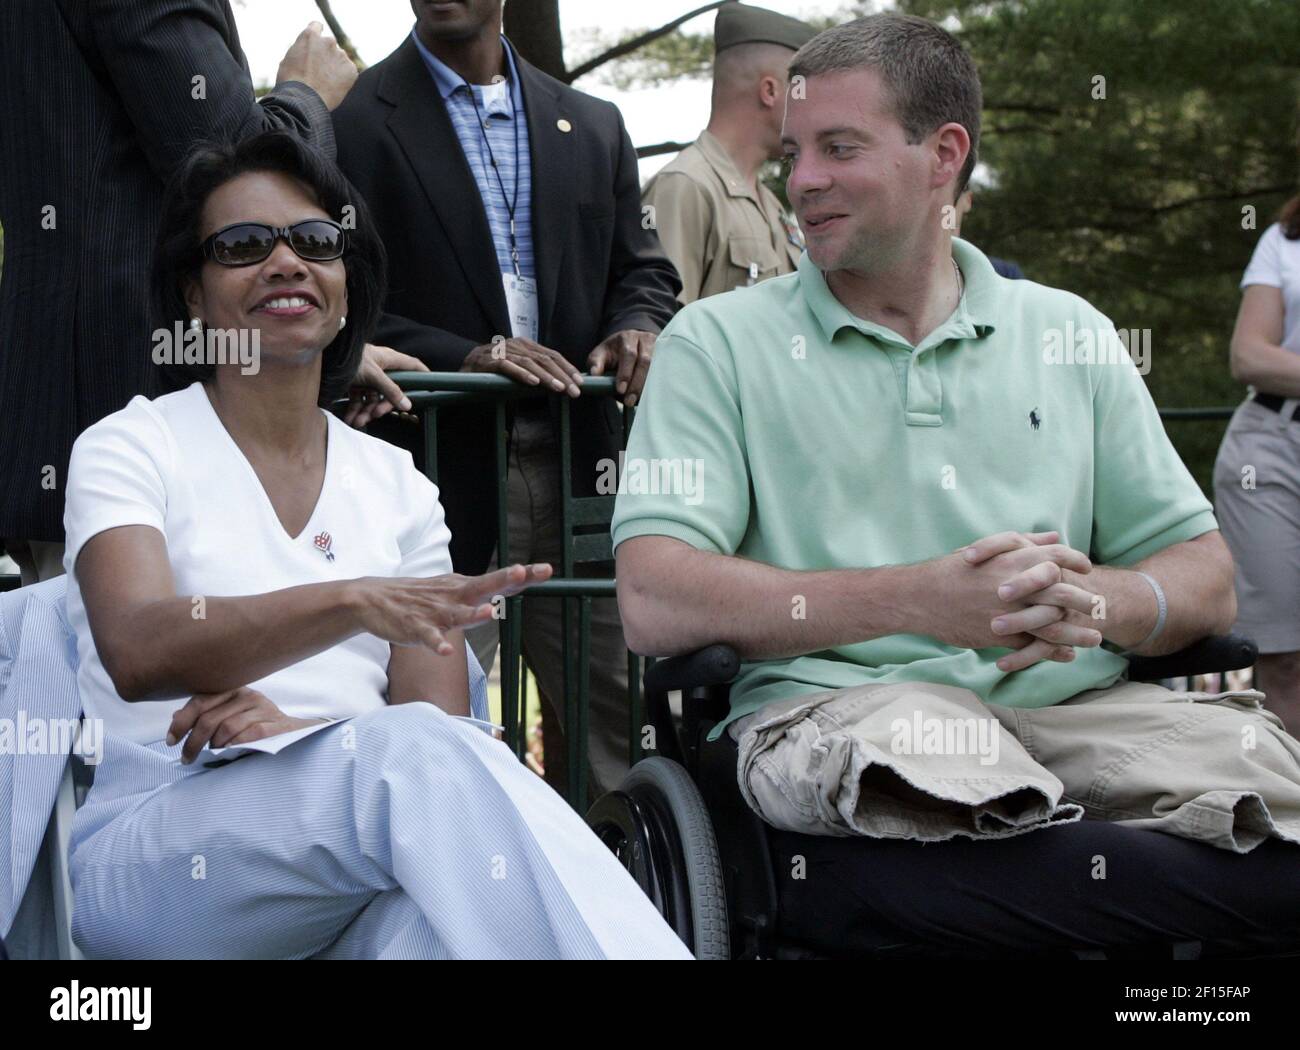 Condoleezza Rice, Secretaria de Estado de EE.UU., habla con el cabo Josh Bleill de la lanza Marina de EE.UU., que fue gravemente herido en Irak, mientras observan la segunda ronda del torneo nacional DE AT&T desde el hoyo 16th en el Congressional Country Club en Bethesda, Maryland, viernes, 6 de julio de 2007. (Foto de Saul Loeb/MCT/Sipa USA) Foto de stock